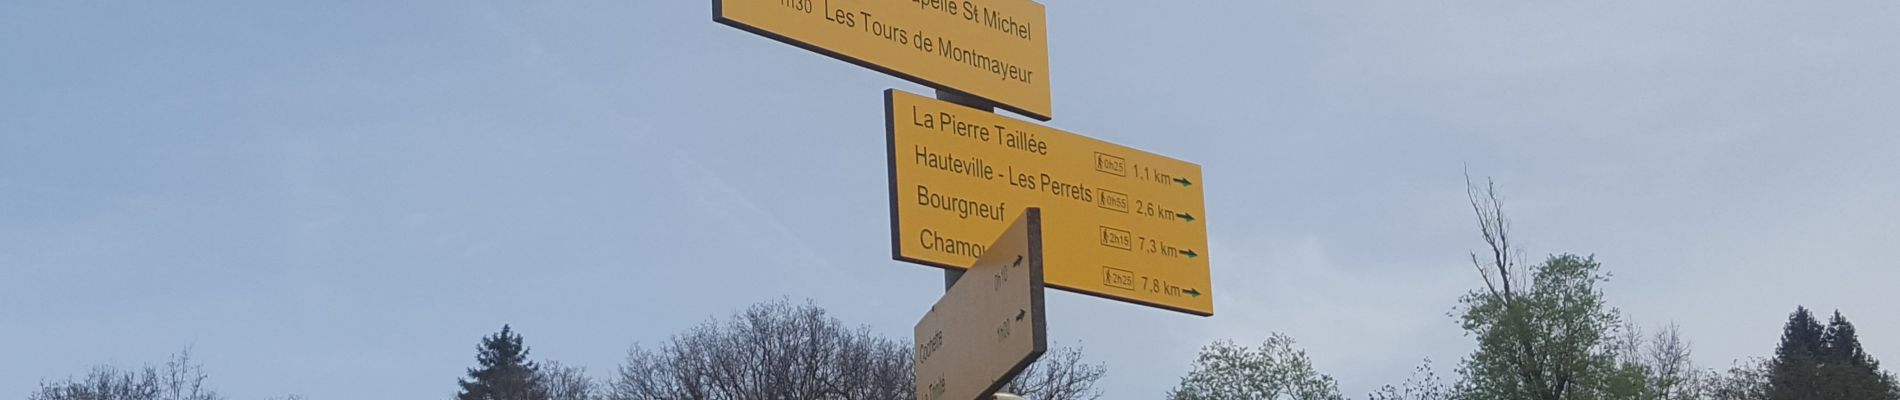 Excursión Senderismo La Trinité - Les Tours de Montmayeur au départ de la Trinité via col de Cochette - Photo